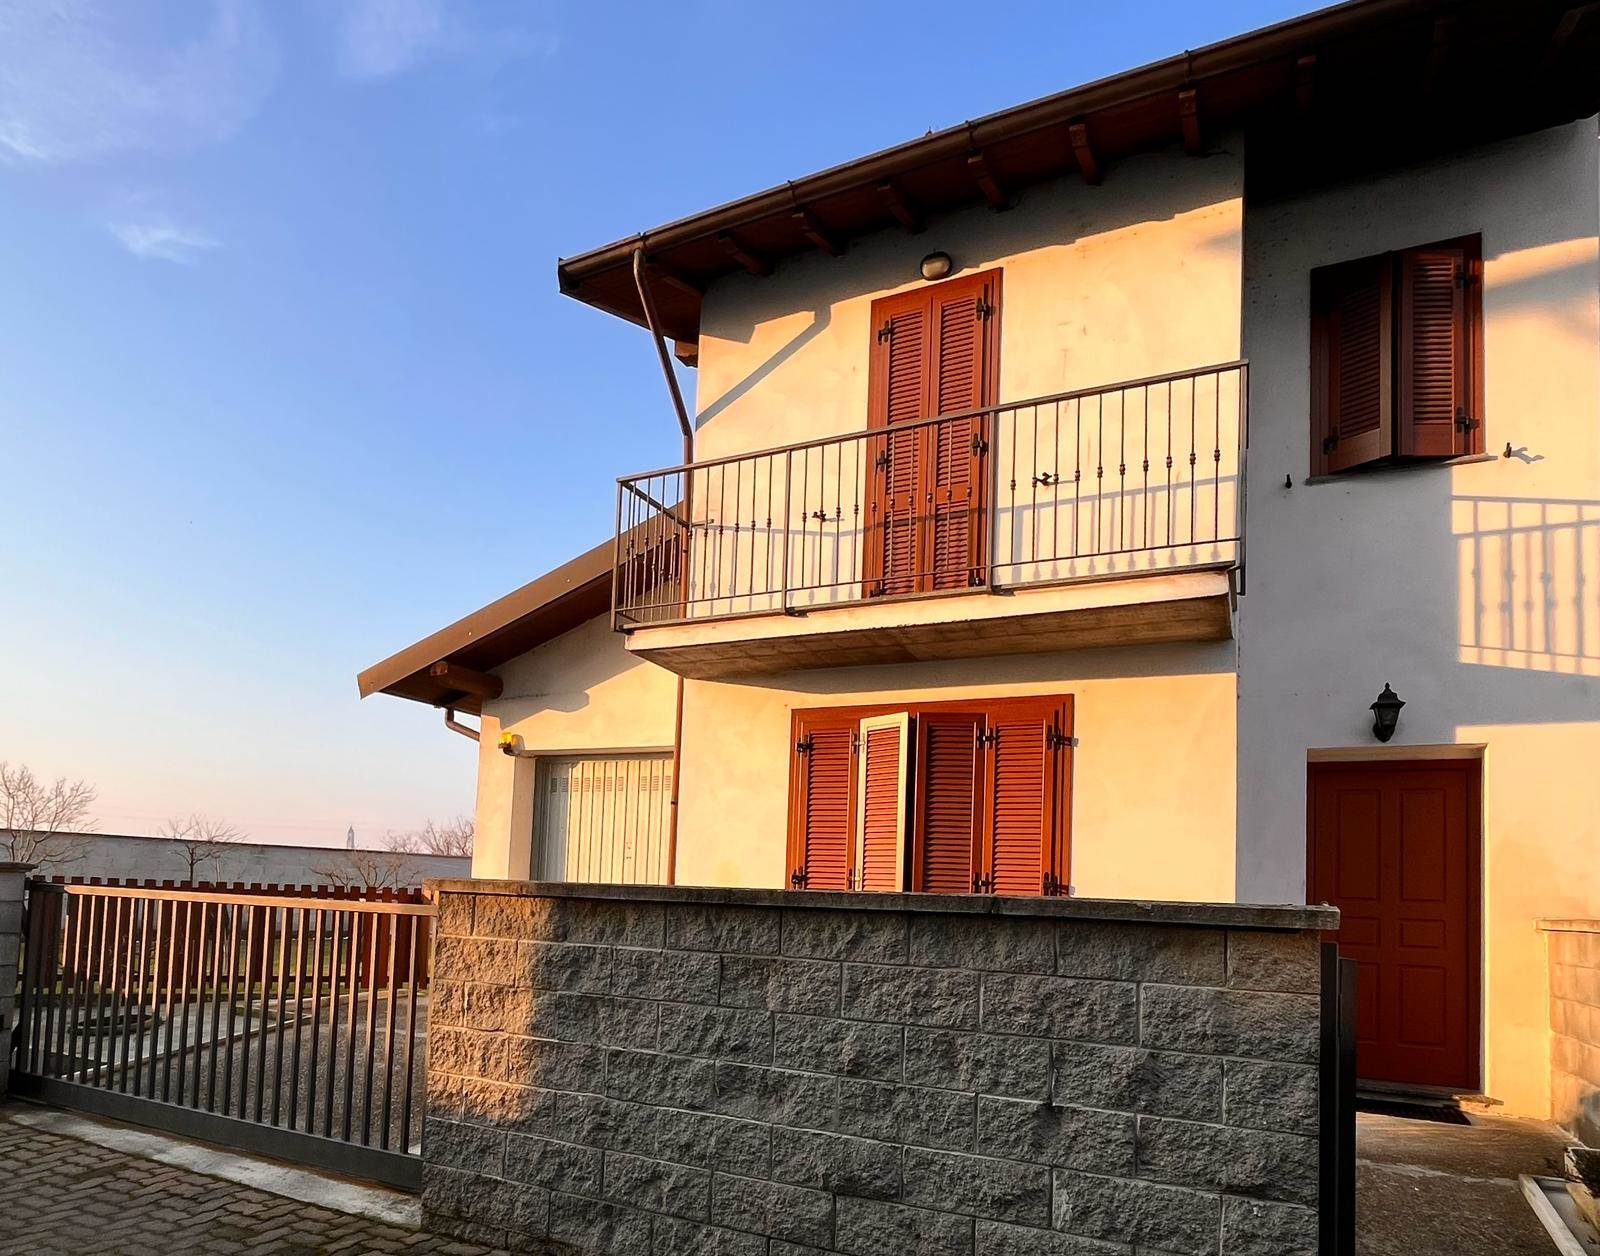 Villa in vendita a Gambolò, 5 locali, prezzo € 200.000 | PortaleAgenzieImmobiliari.it